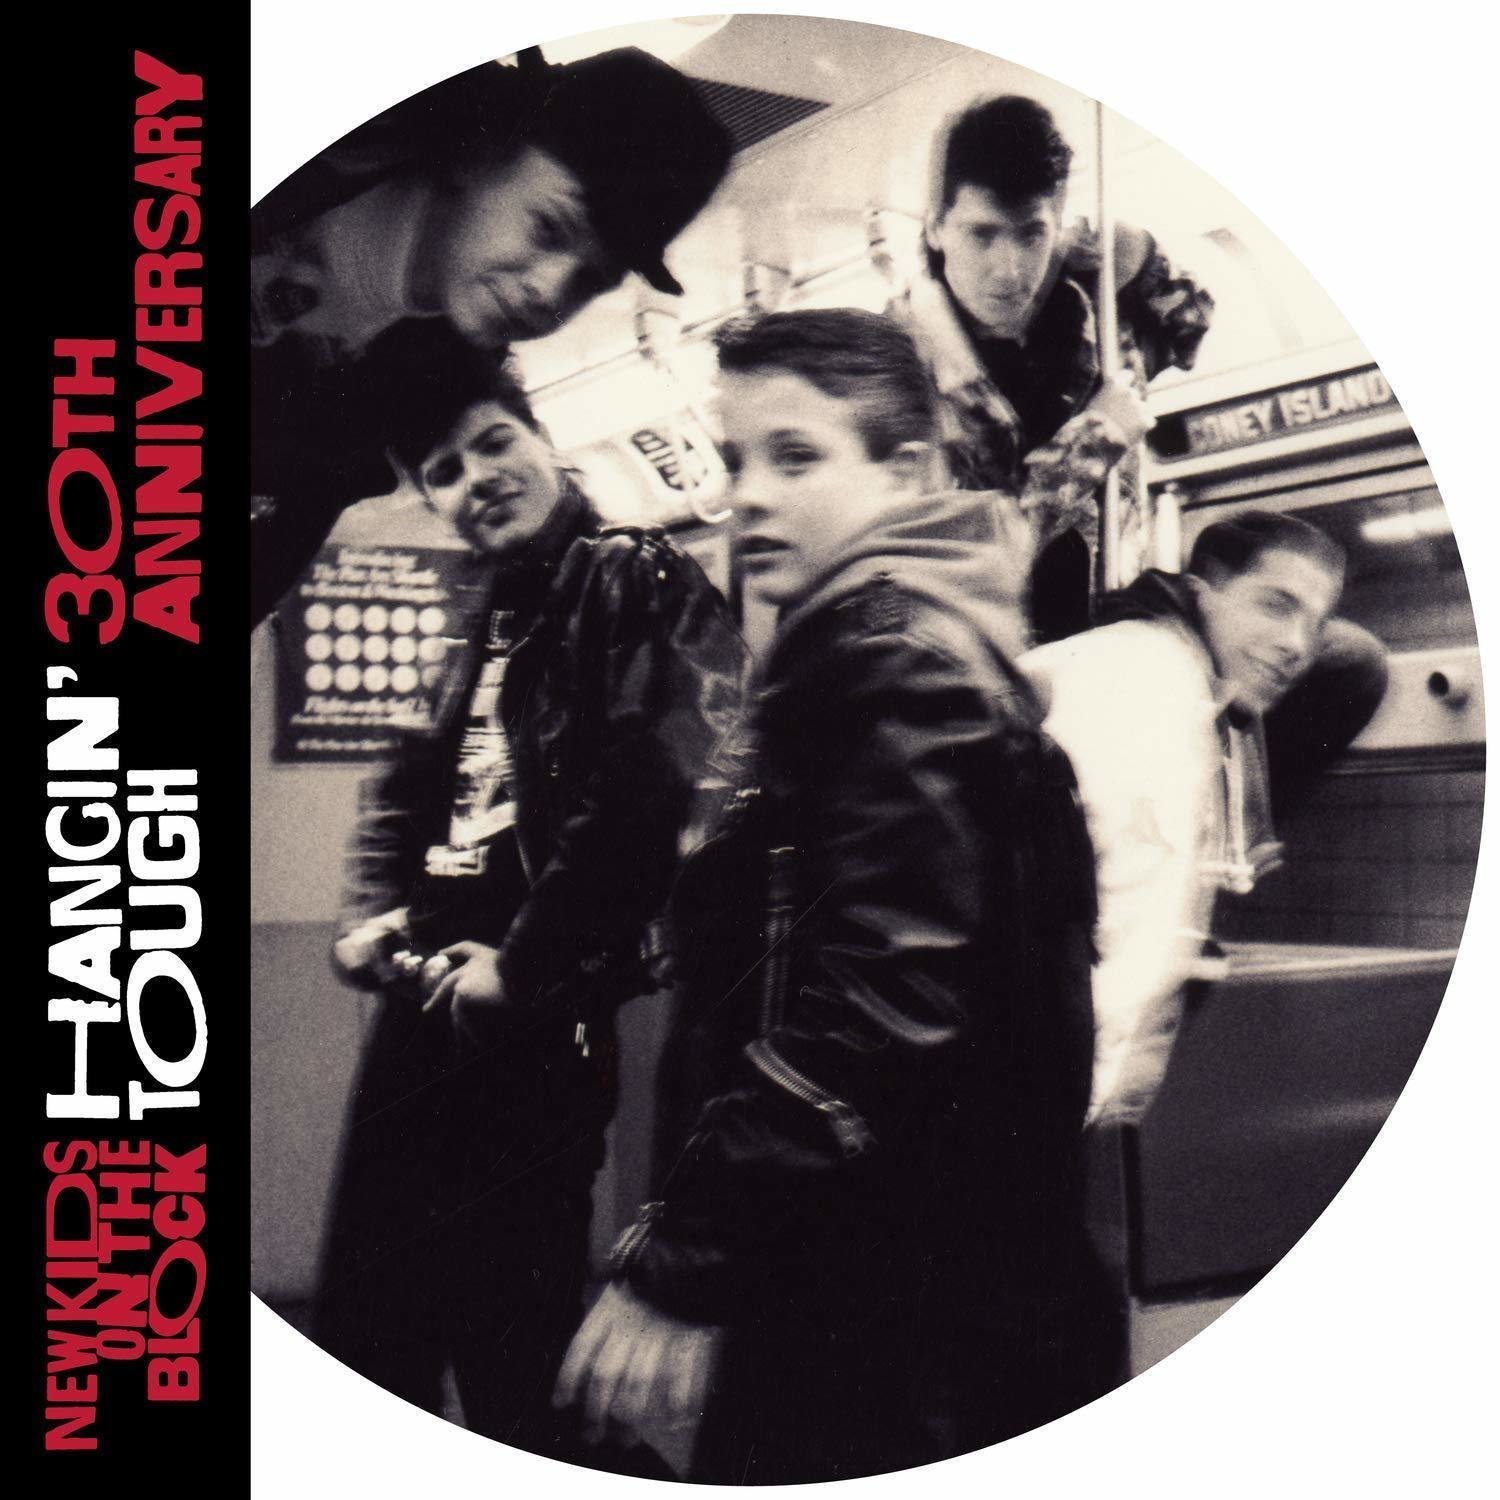 Disque vinyle New Kids On The Block Hangin' Tough (2 LP)